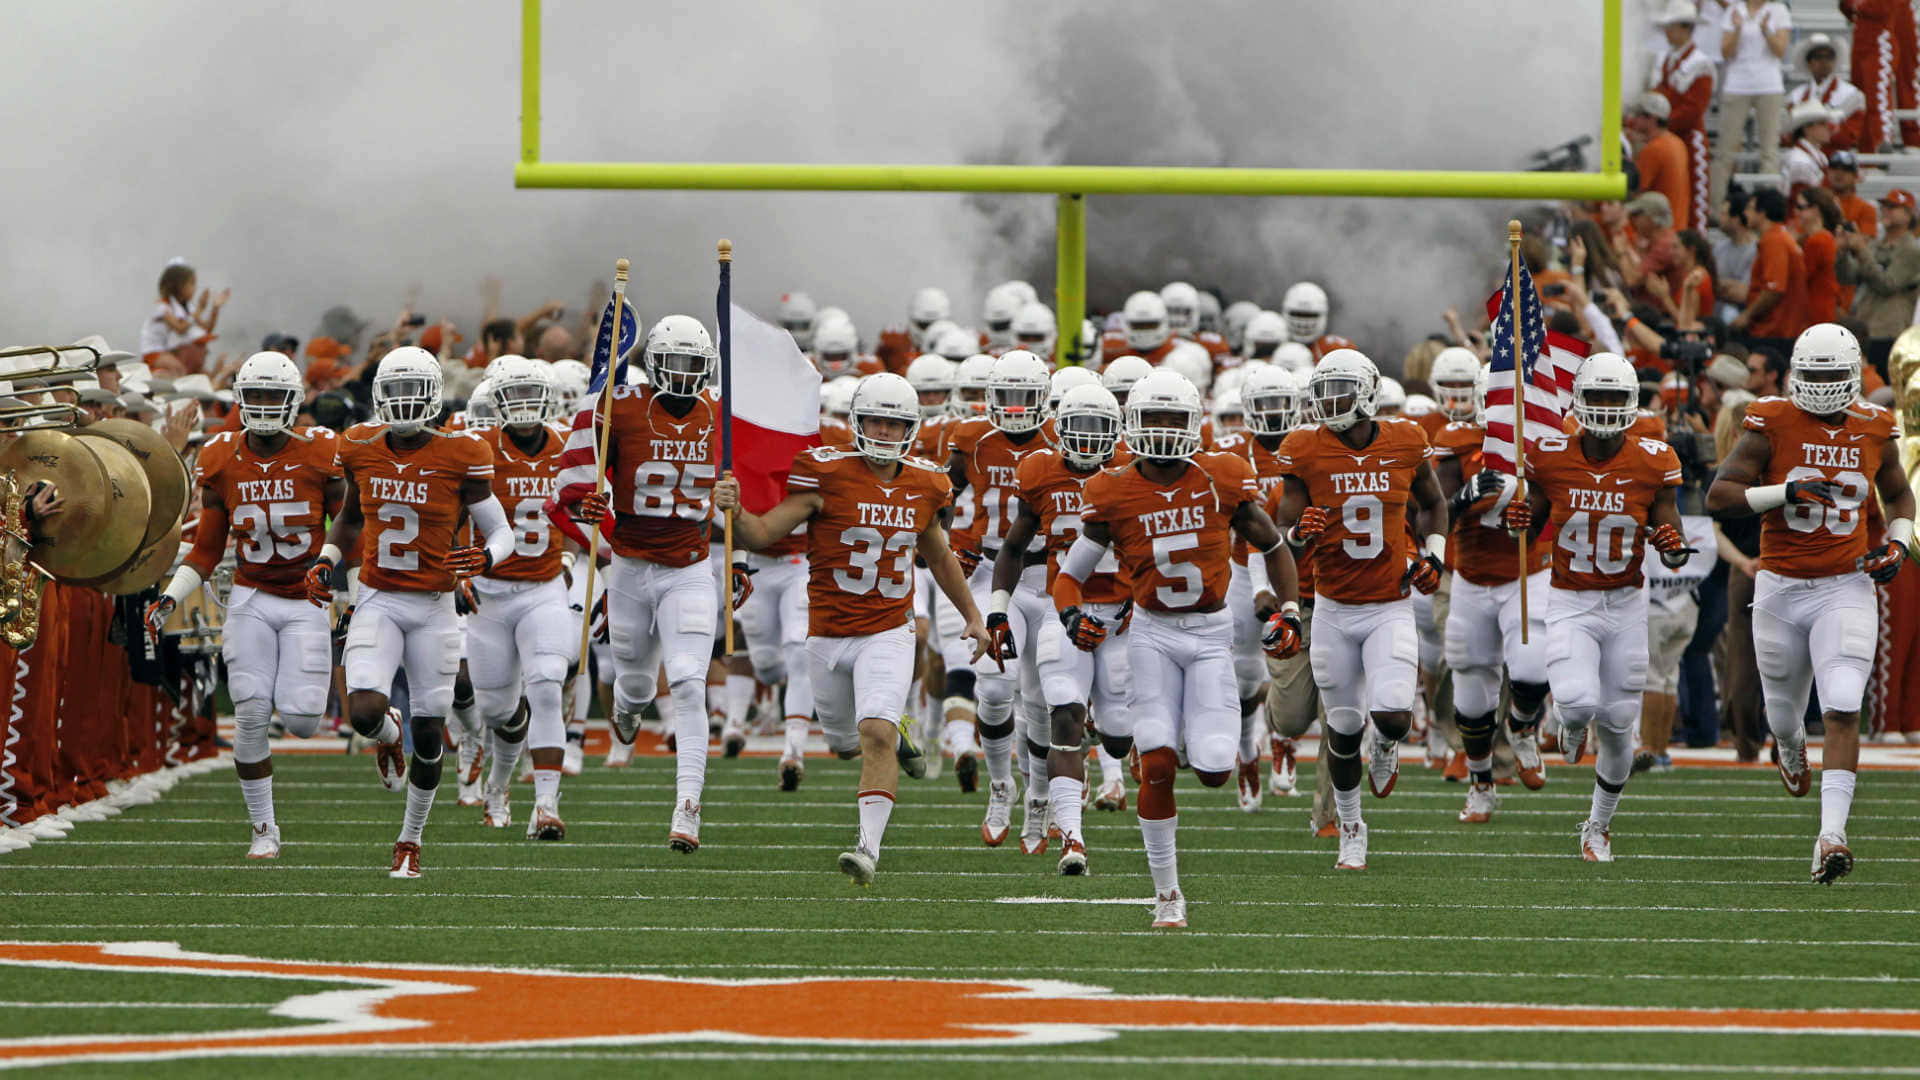 Det texanske longhorns fodboldhold løber ud på feltet Wallpaper